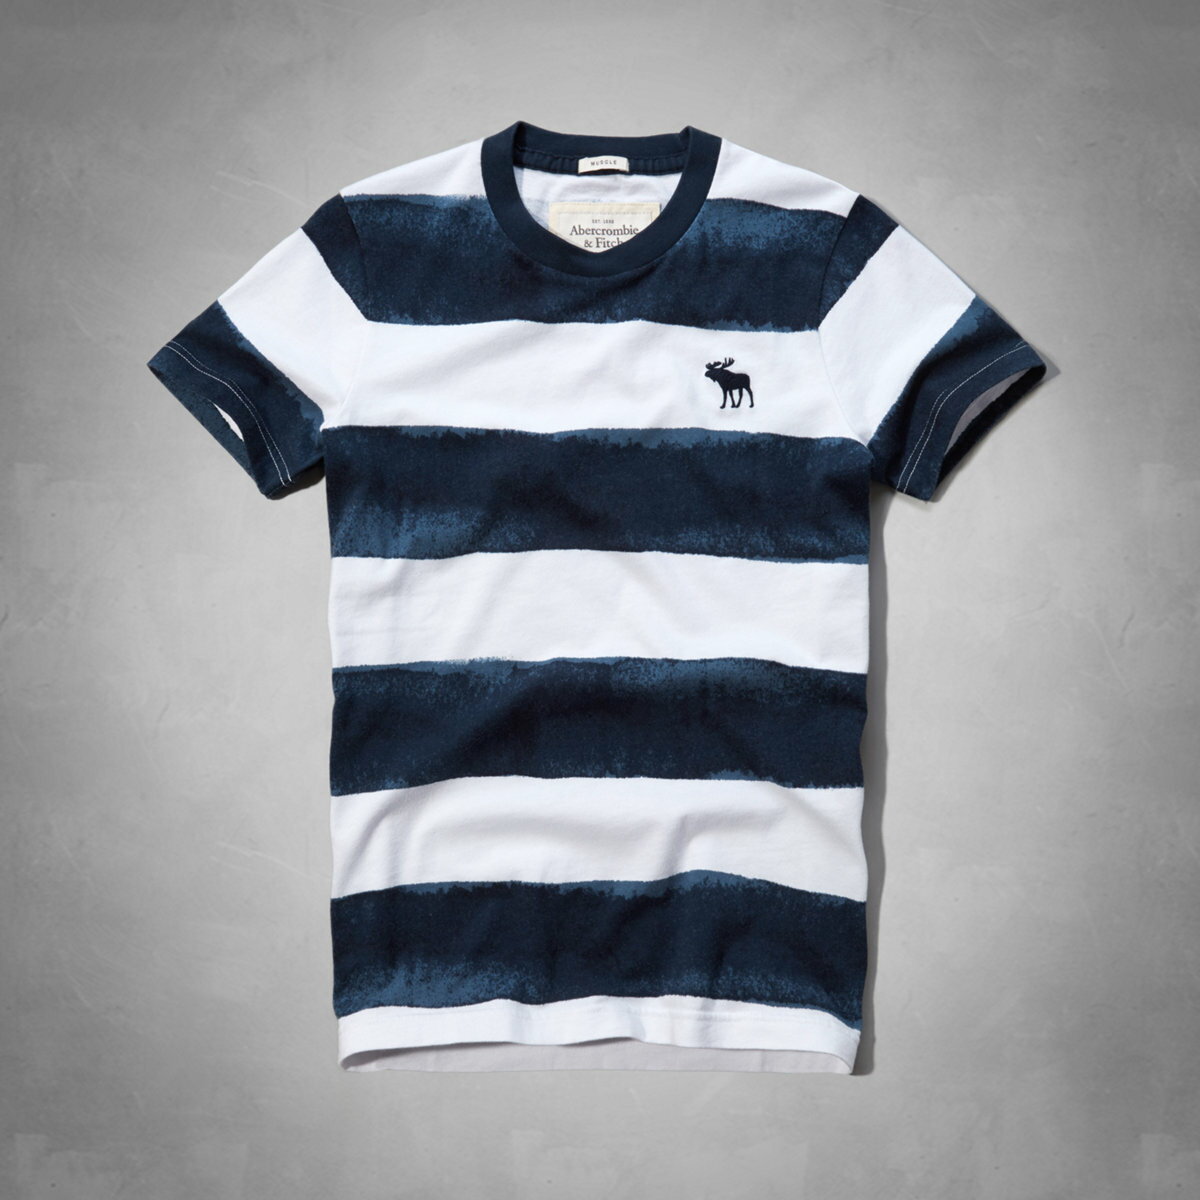 美國百分百【全新真品】Abercrombie & Fitch T恤 AF 短袖 T-shirt 麋鹿 深藍 條紋 圓領 Logo 男 L XL號